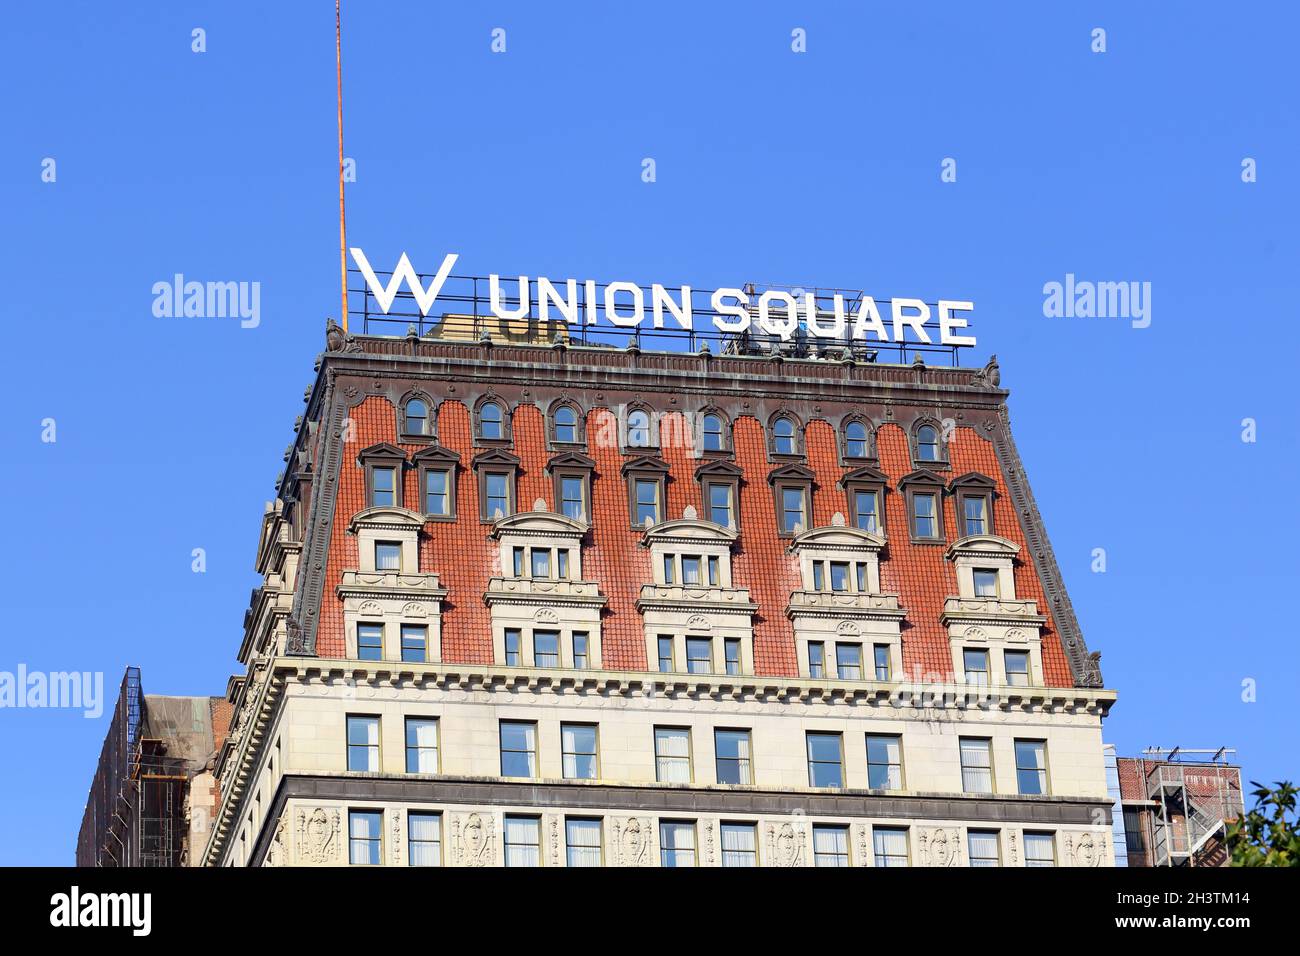 W New York Union Square, 201 Park Ave S, New York, NY. Außenansicht eines Hotels in einem historischen beaux Arts-Gebäude. Stockfoto